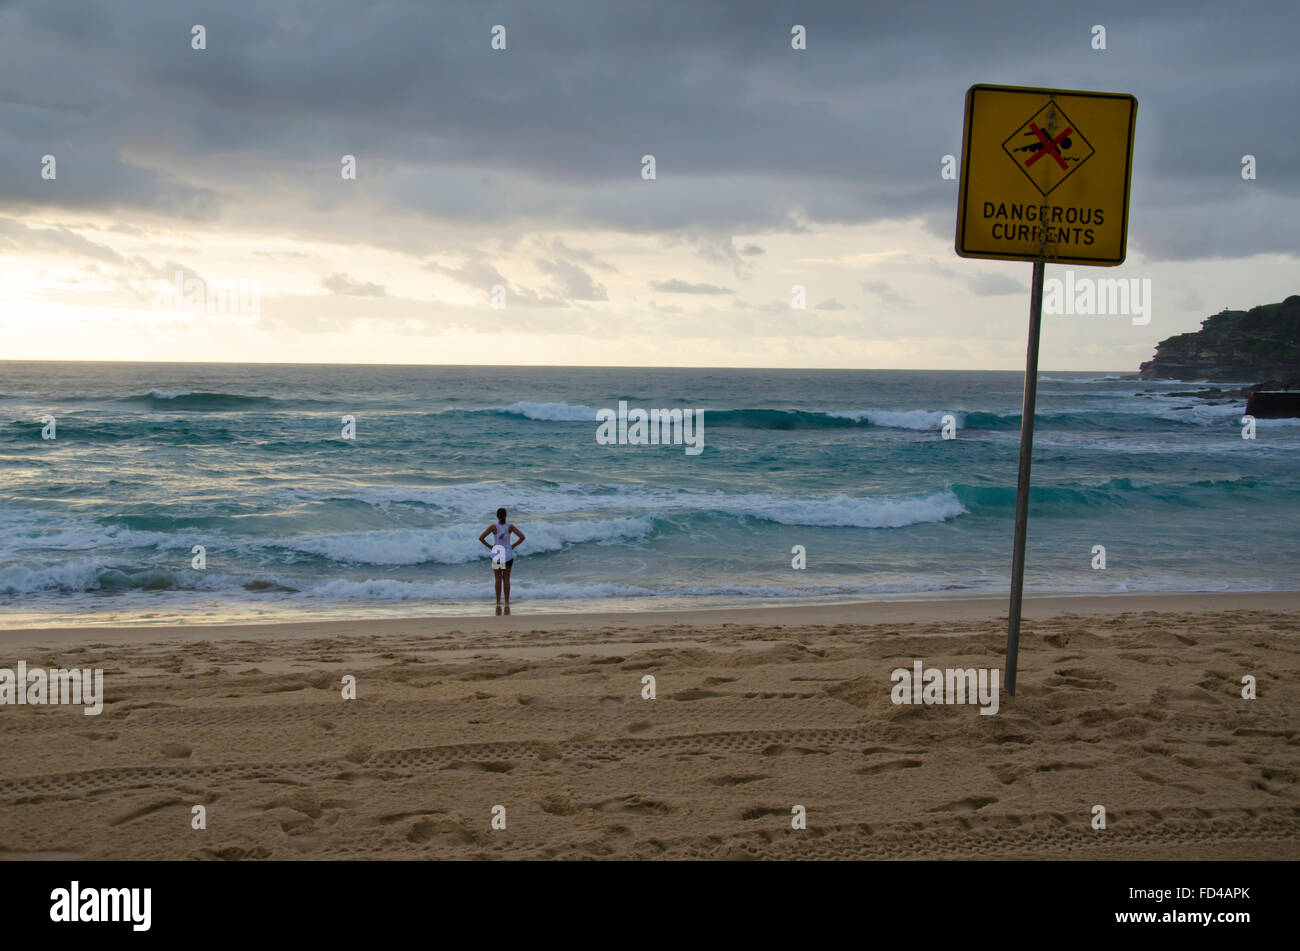 Un surf dangereux, un panneau d'avertissement et une personne regardant les vagues et l'océan sur la plage de Bondi à Sydney, en Australie Banque D'Images